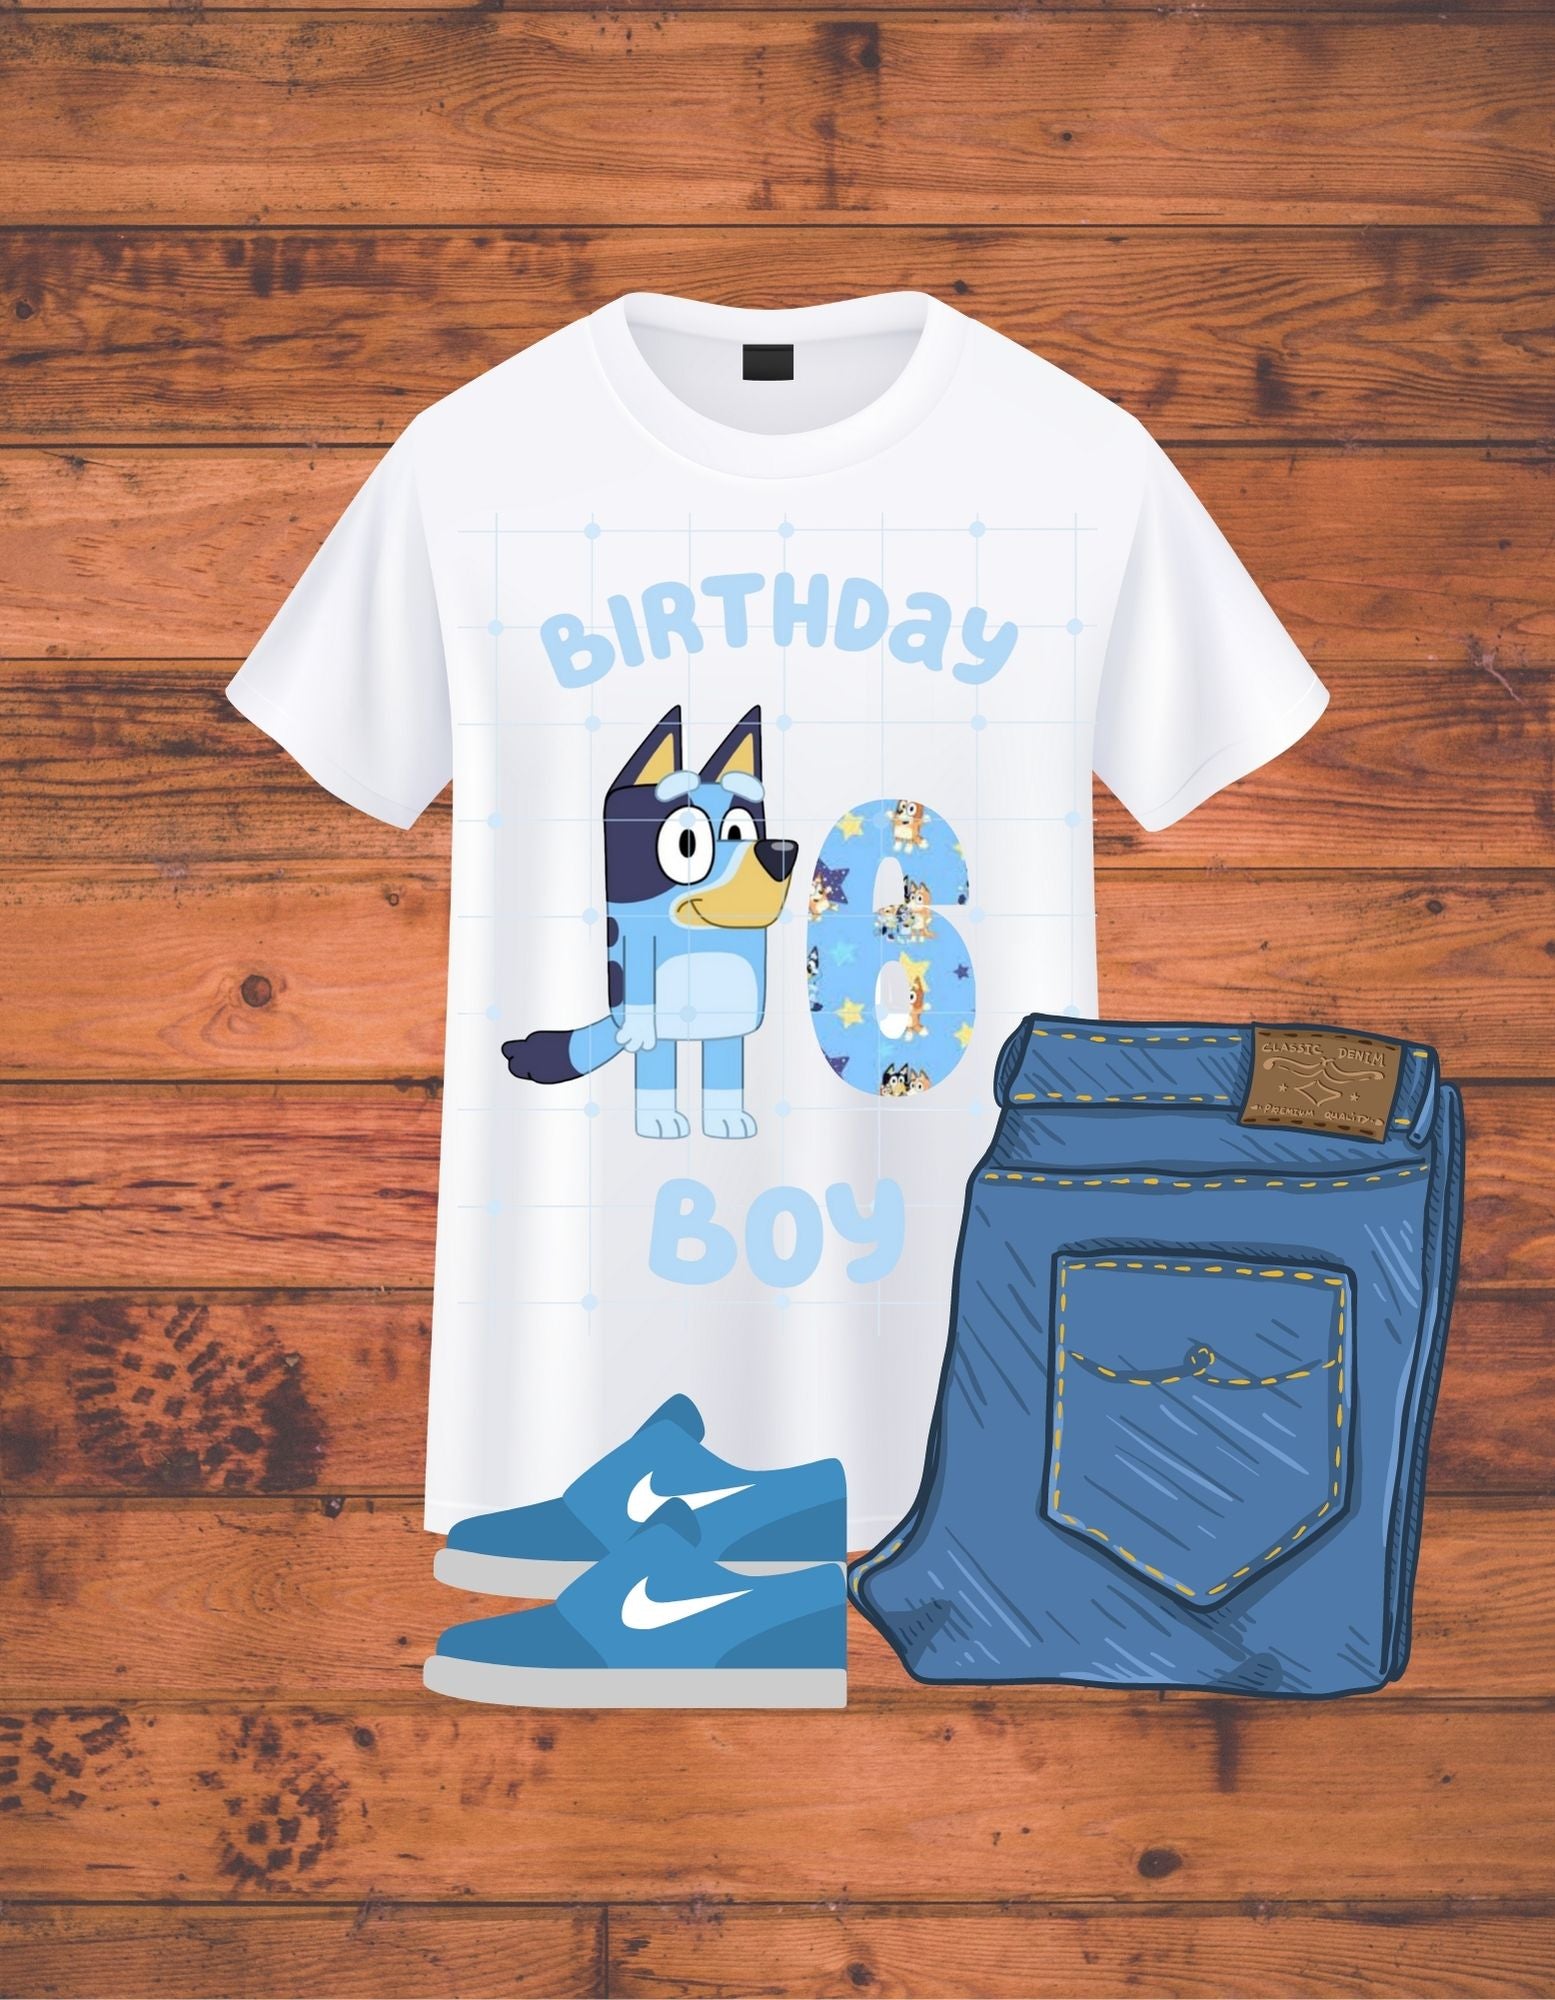 Bluey T-shirt / Bluey party / Bluey kids t-shirt/ bluey birthday tee